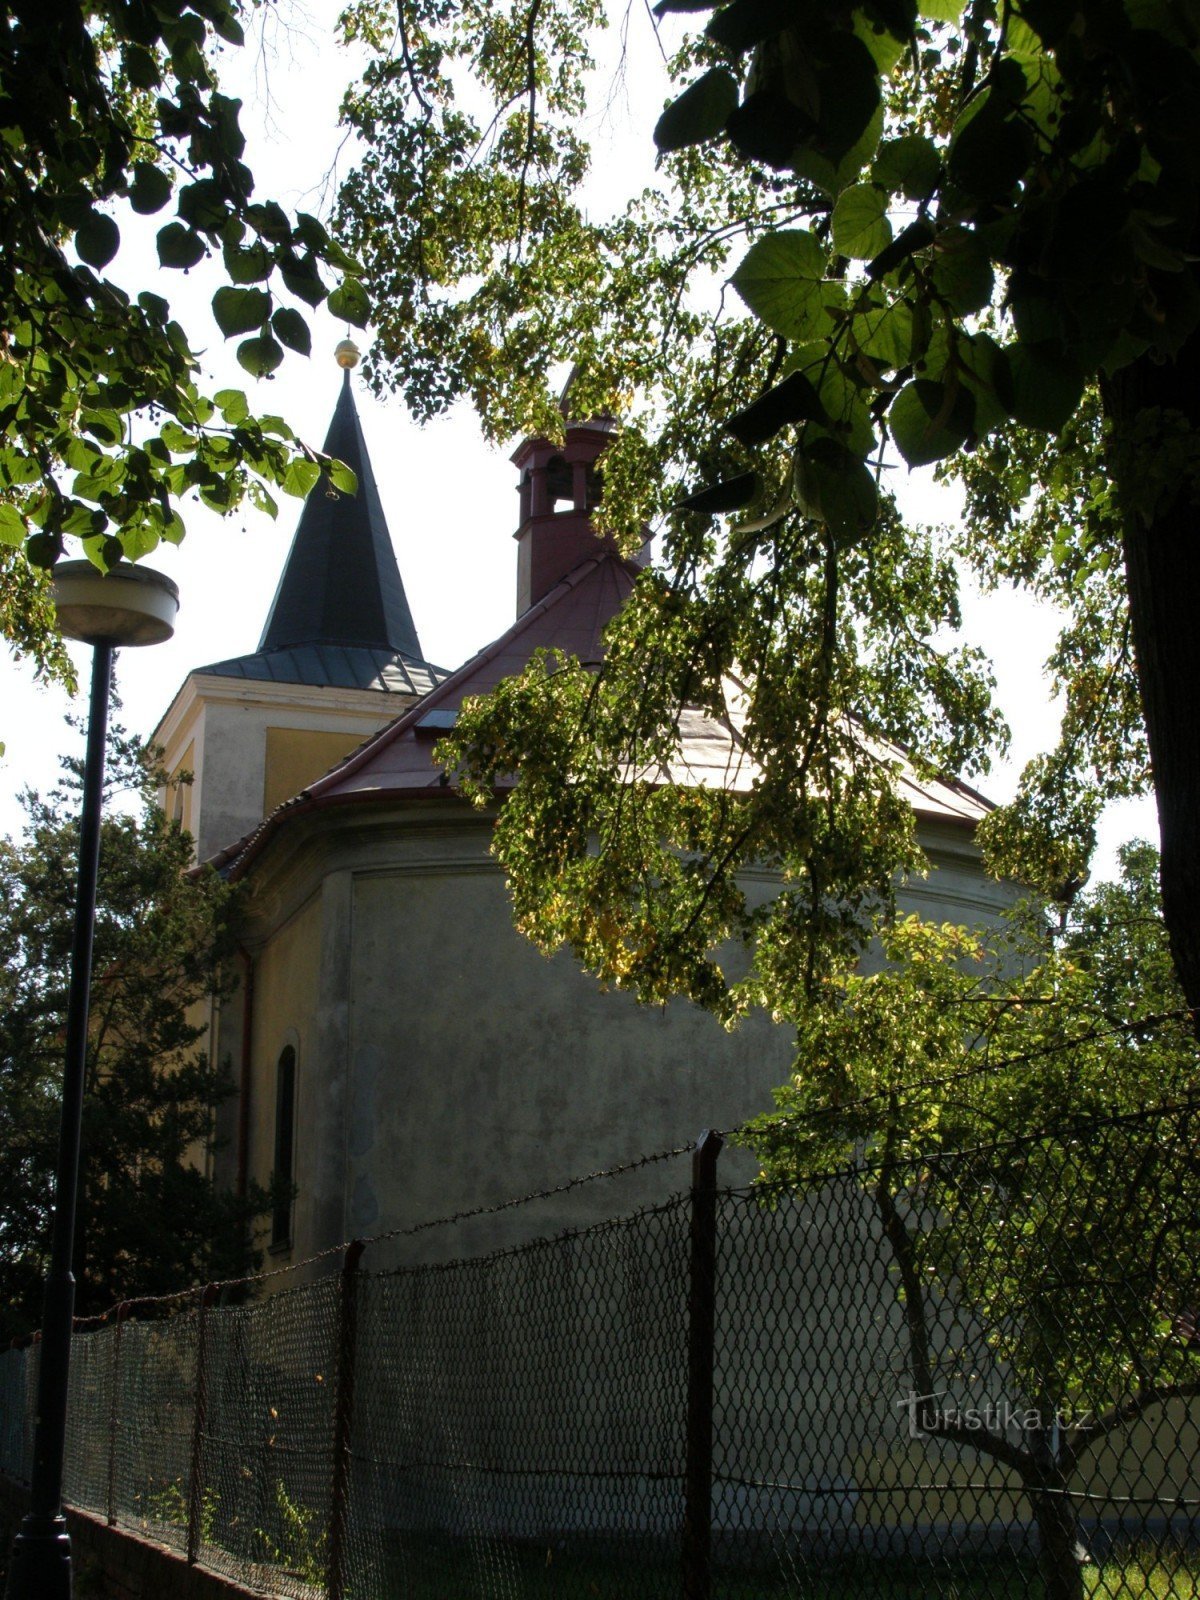 Plotiště nad Labem - Crkva sv. Petar